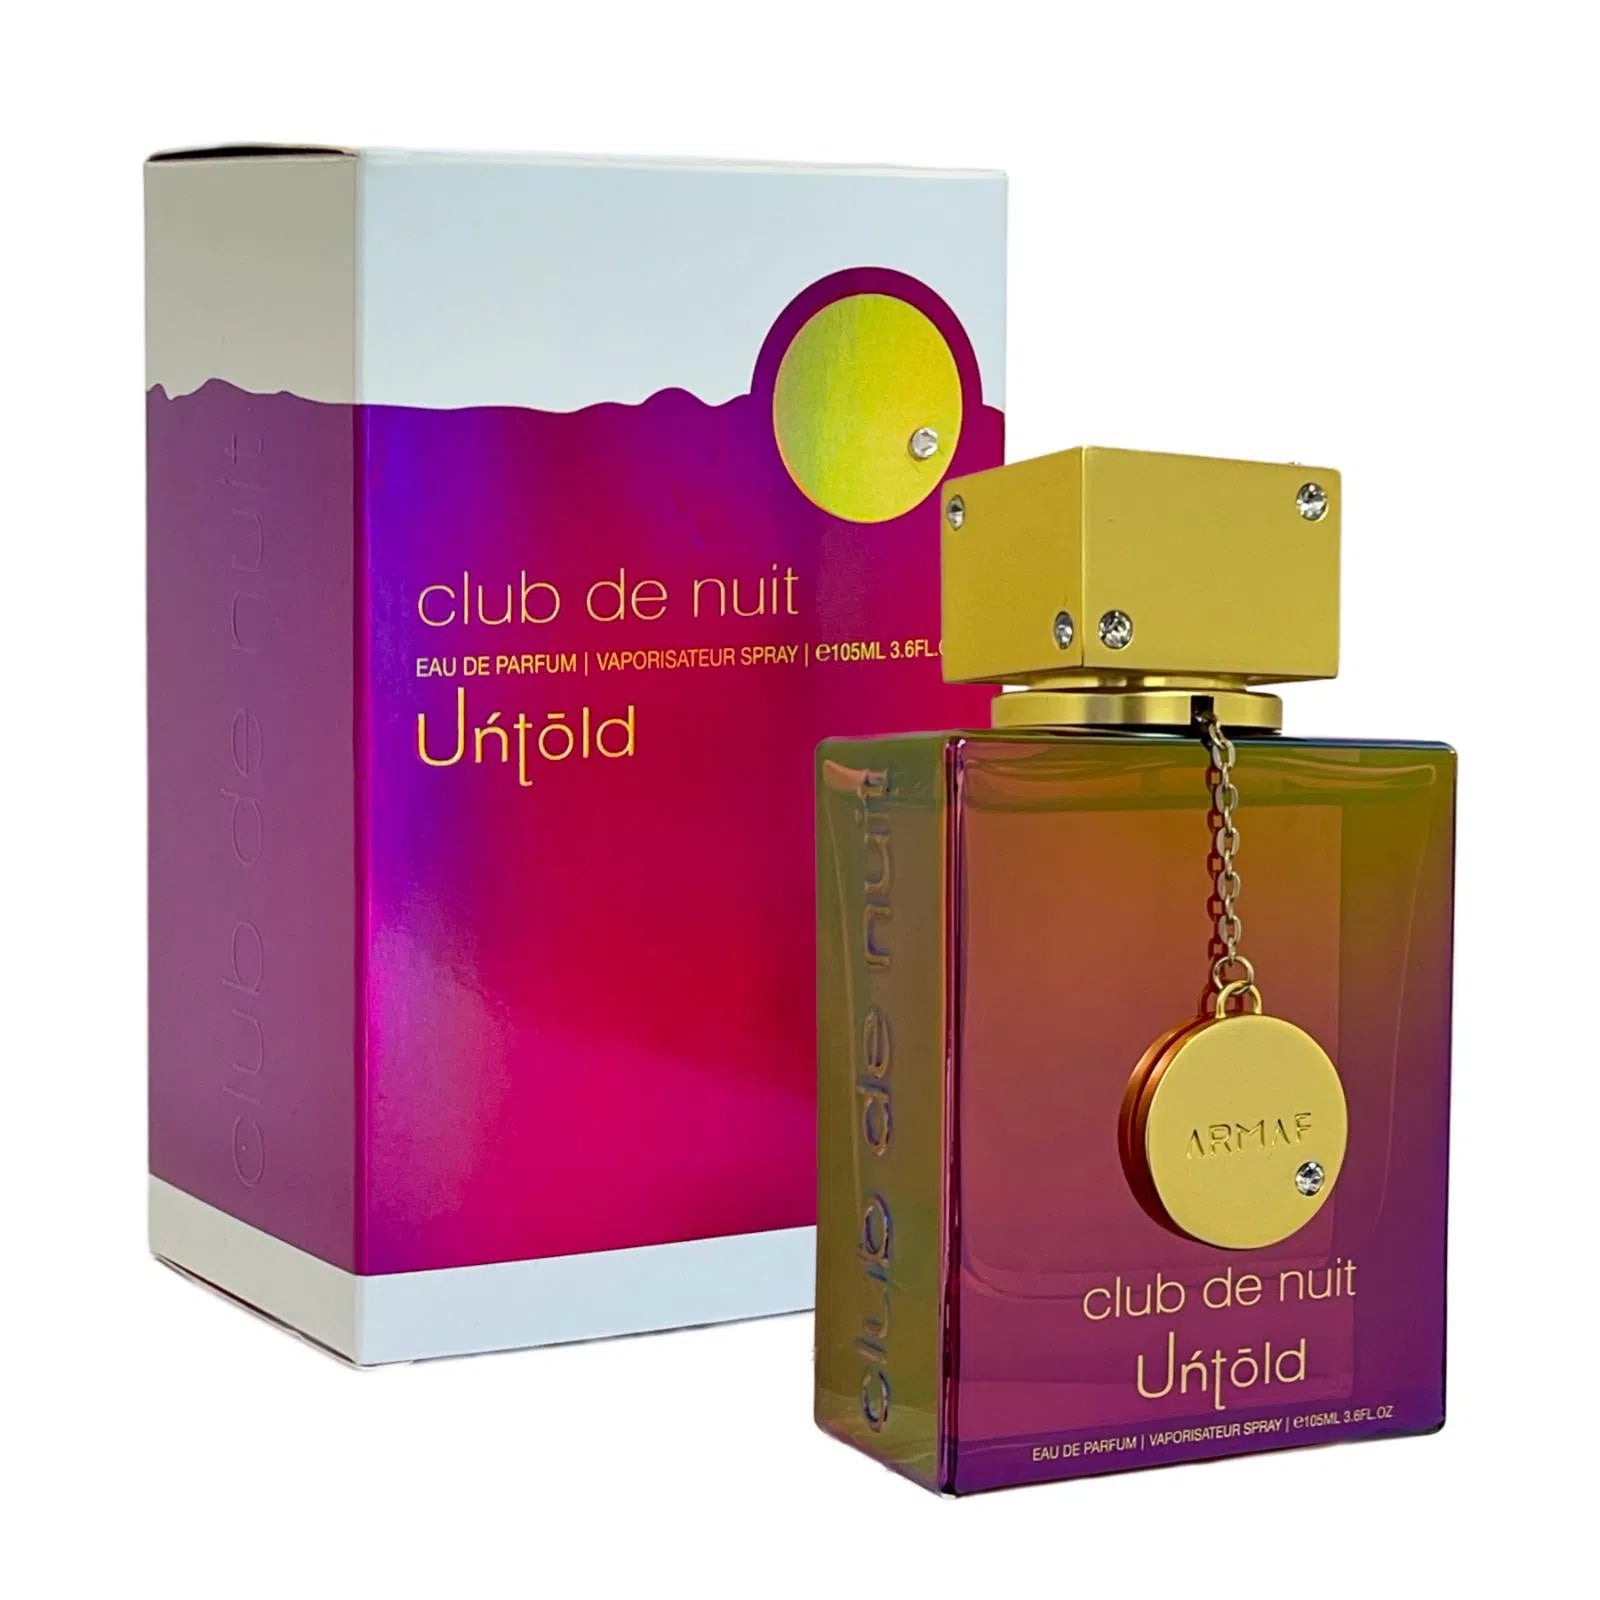 Perfume Armaf Club de Nuit Untold EDP (M) / 105 ml - 6294015164176- Prive Perfumes Honduras